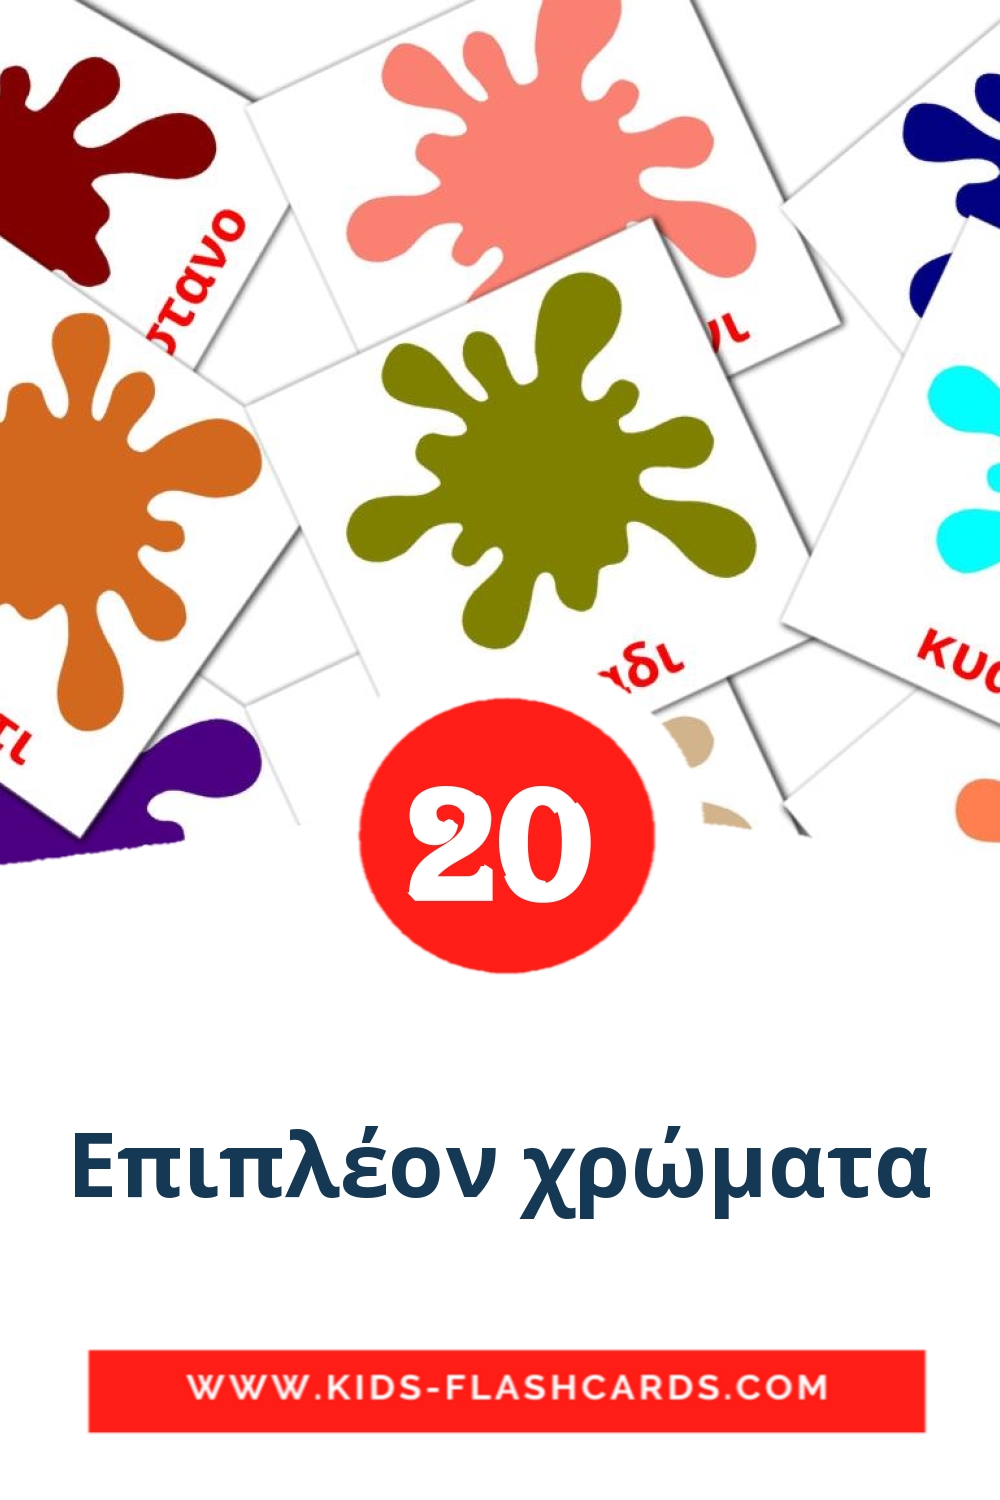 20 tarjetas didacticas de Επιπλέον χρώματα para el jardín de infancia en griego